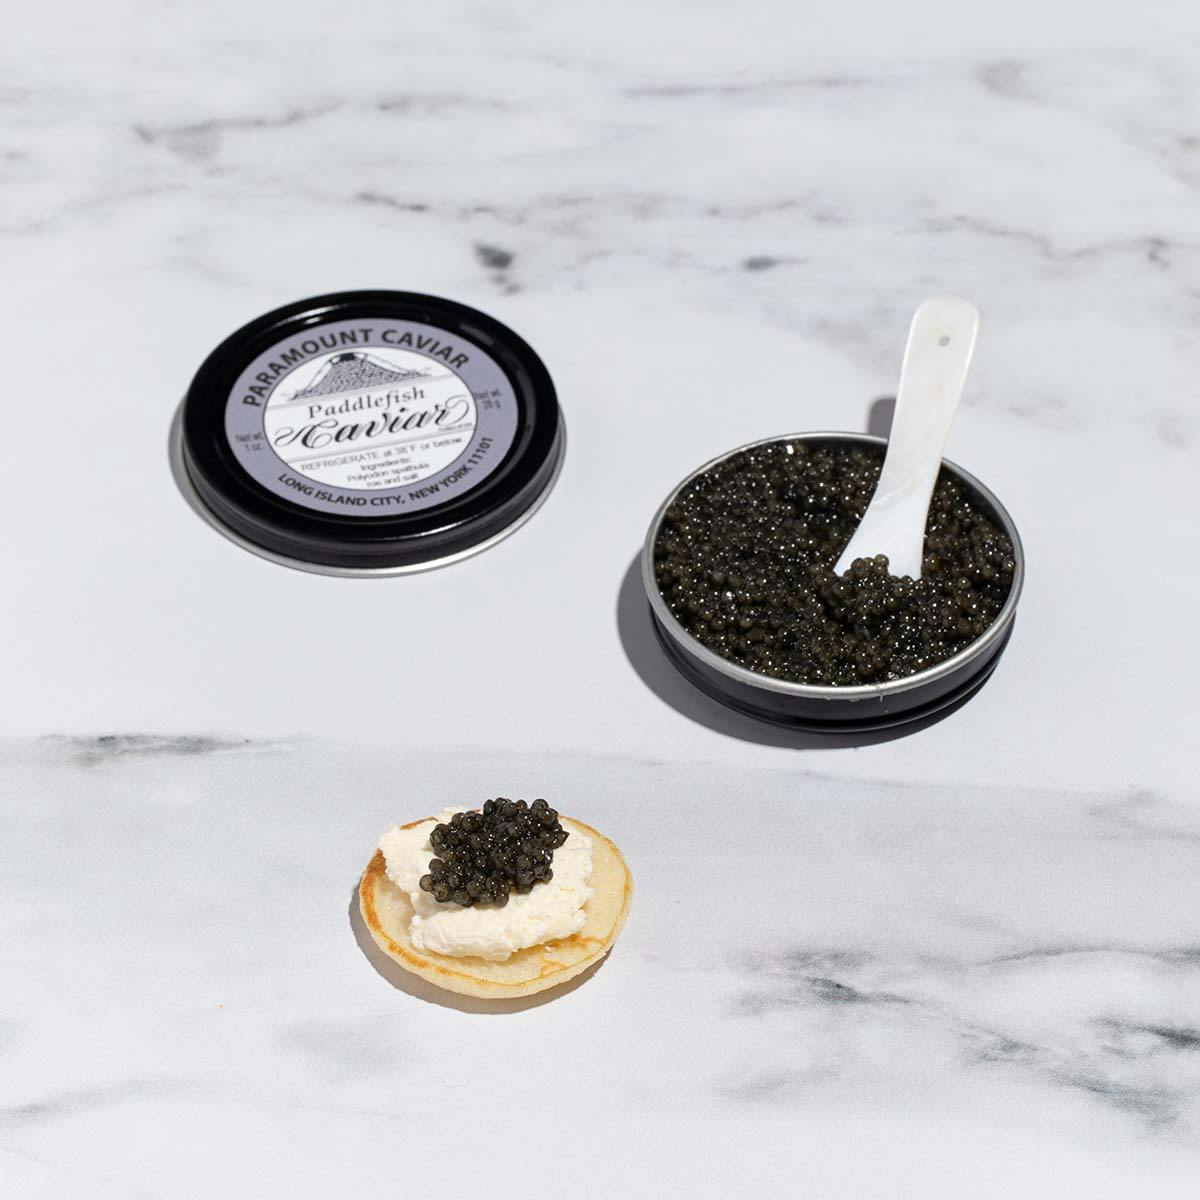 Caviar Tasting Kit for 4-6